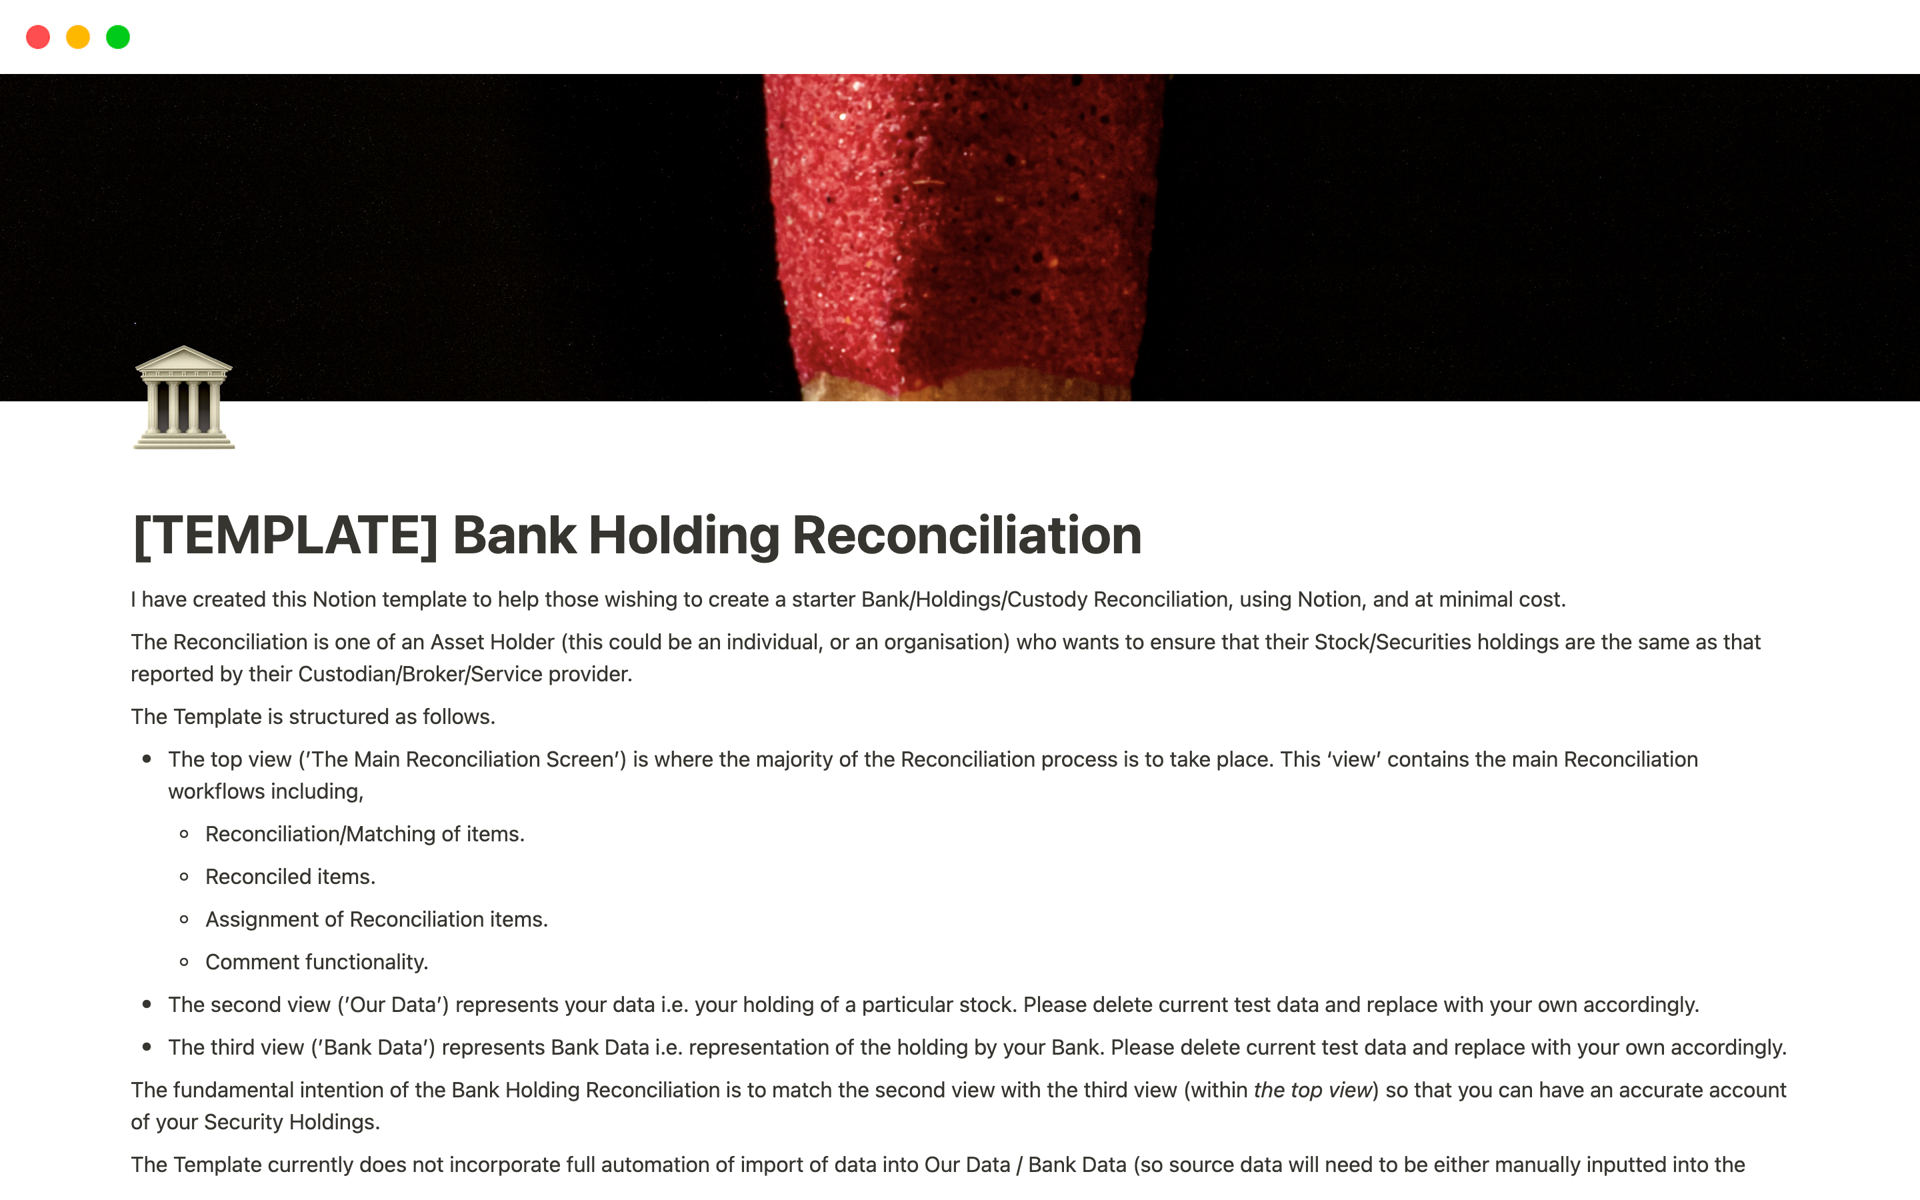 Aperçu du modèle de Bank Holding Reconciliation